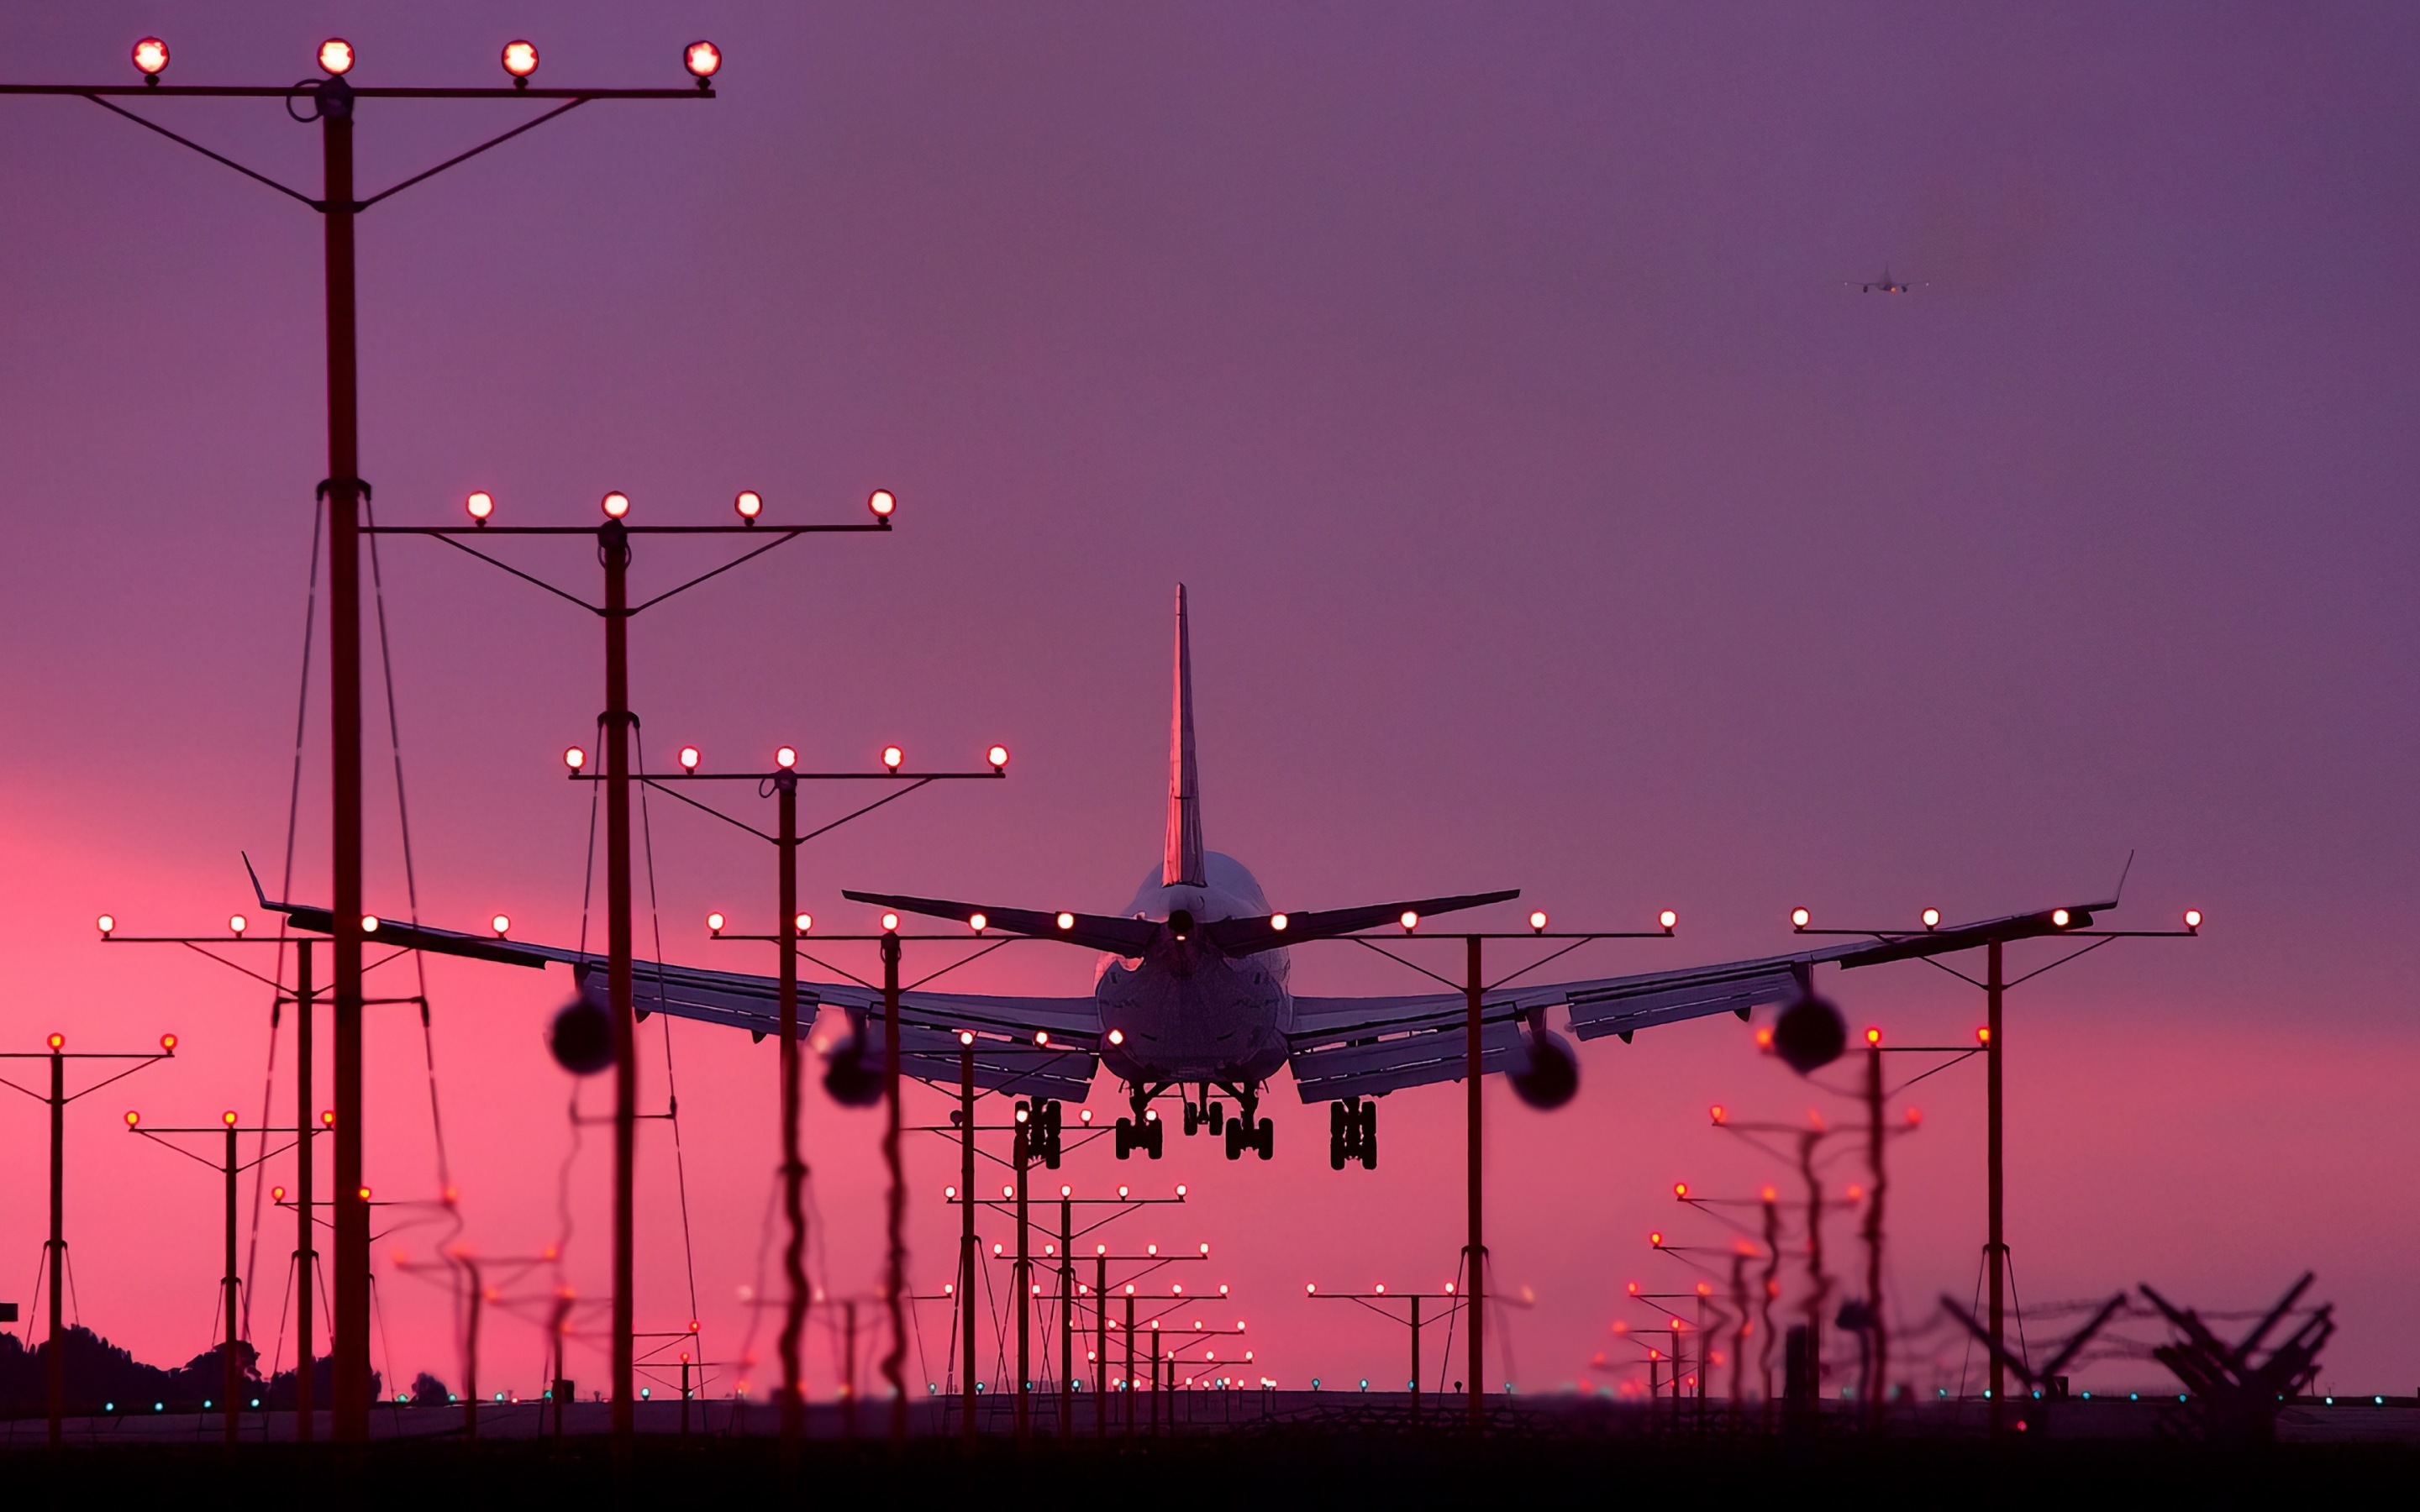 Aircraft, landing, sunset, 2880x1800 wallpaper